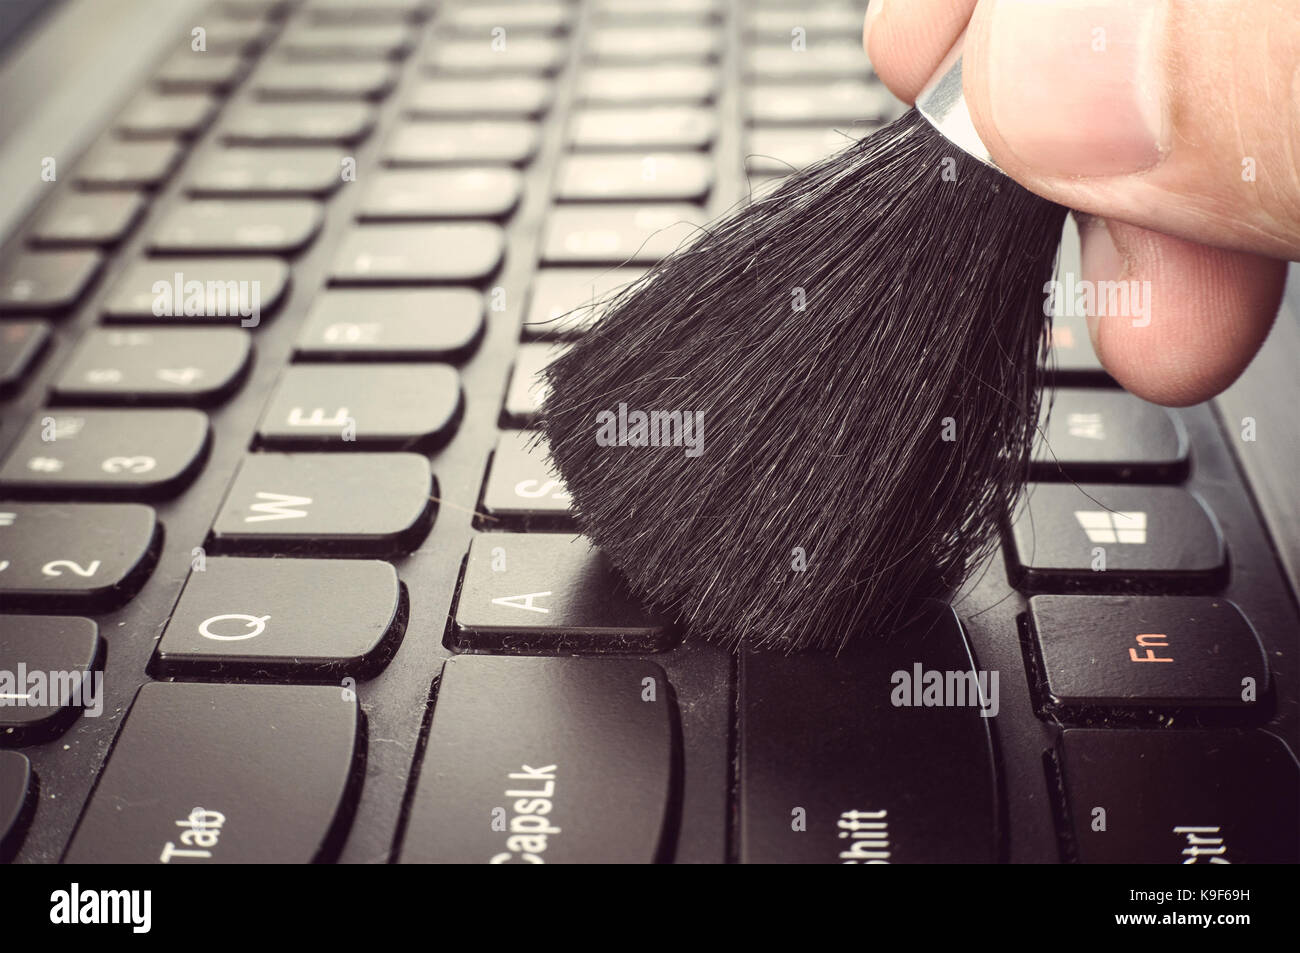 Sporca la pulizia della tastiera del computer. mano maschio con una  spazzola per rimuovere la polvere dalla tastiera close-up Foto stock - Alamy